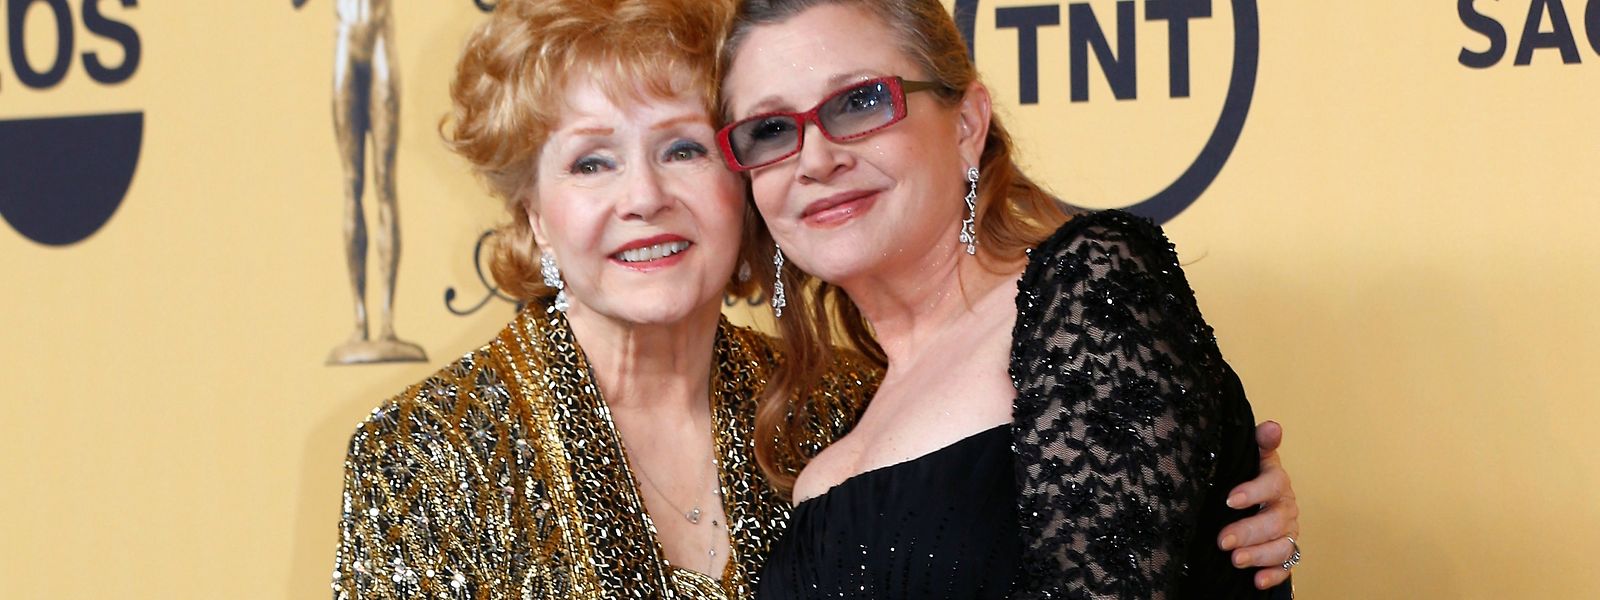 Seltenes Bild: Debbie Reynolds (l.) und ihre Tochter Carrie Fisher traulich vereint.